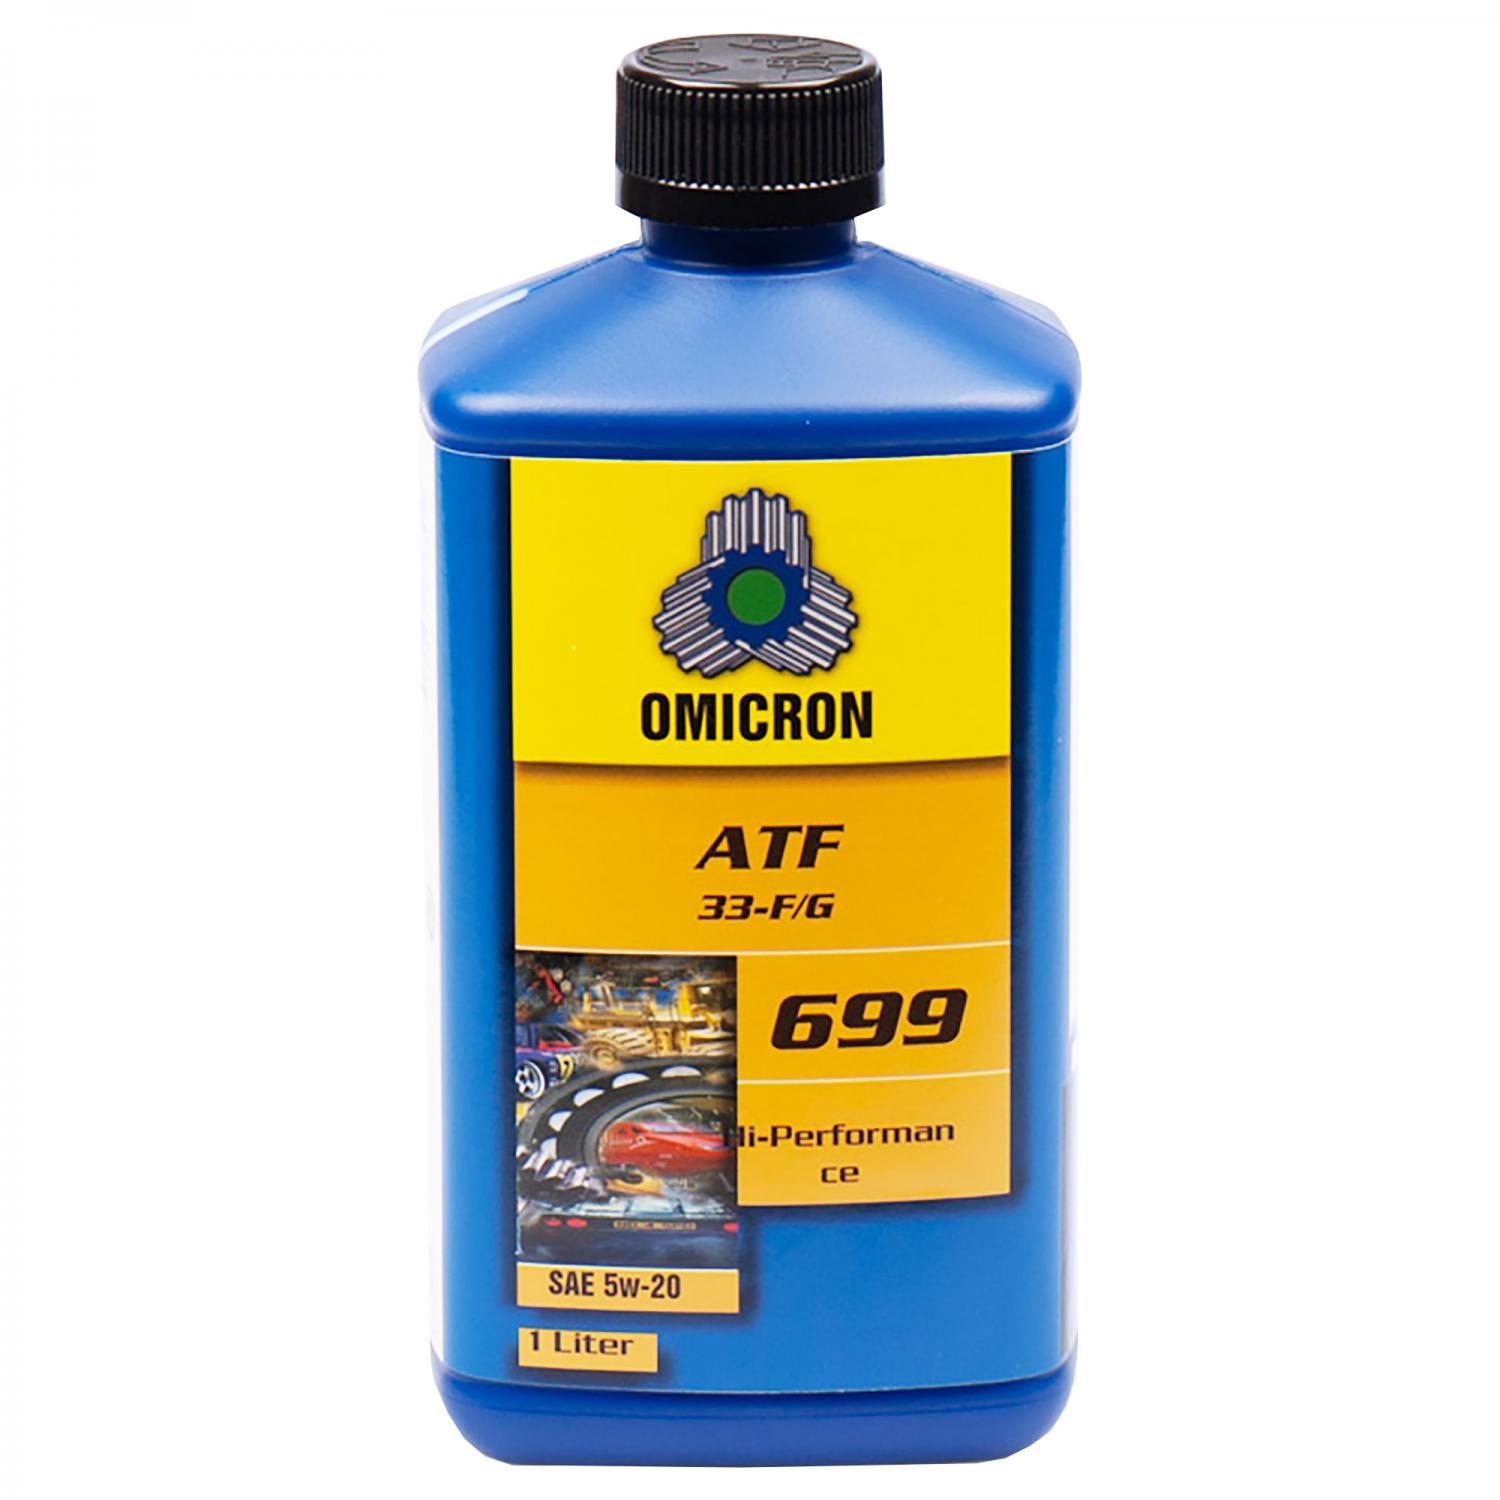 Omicron 699 5W-20 ATF-Olja "33 F/G" 1L